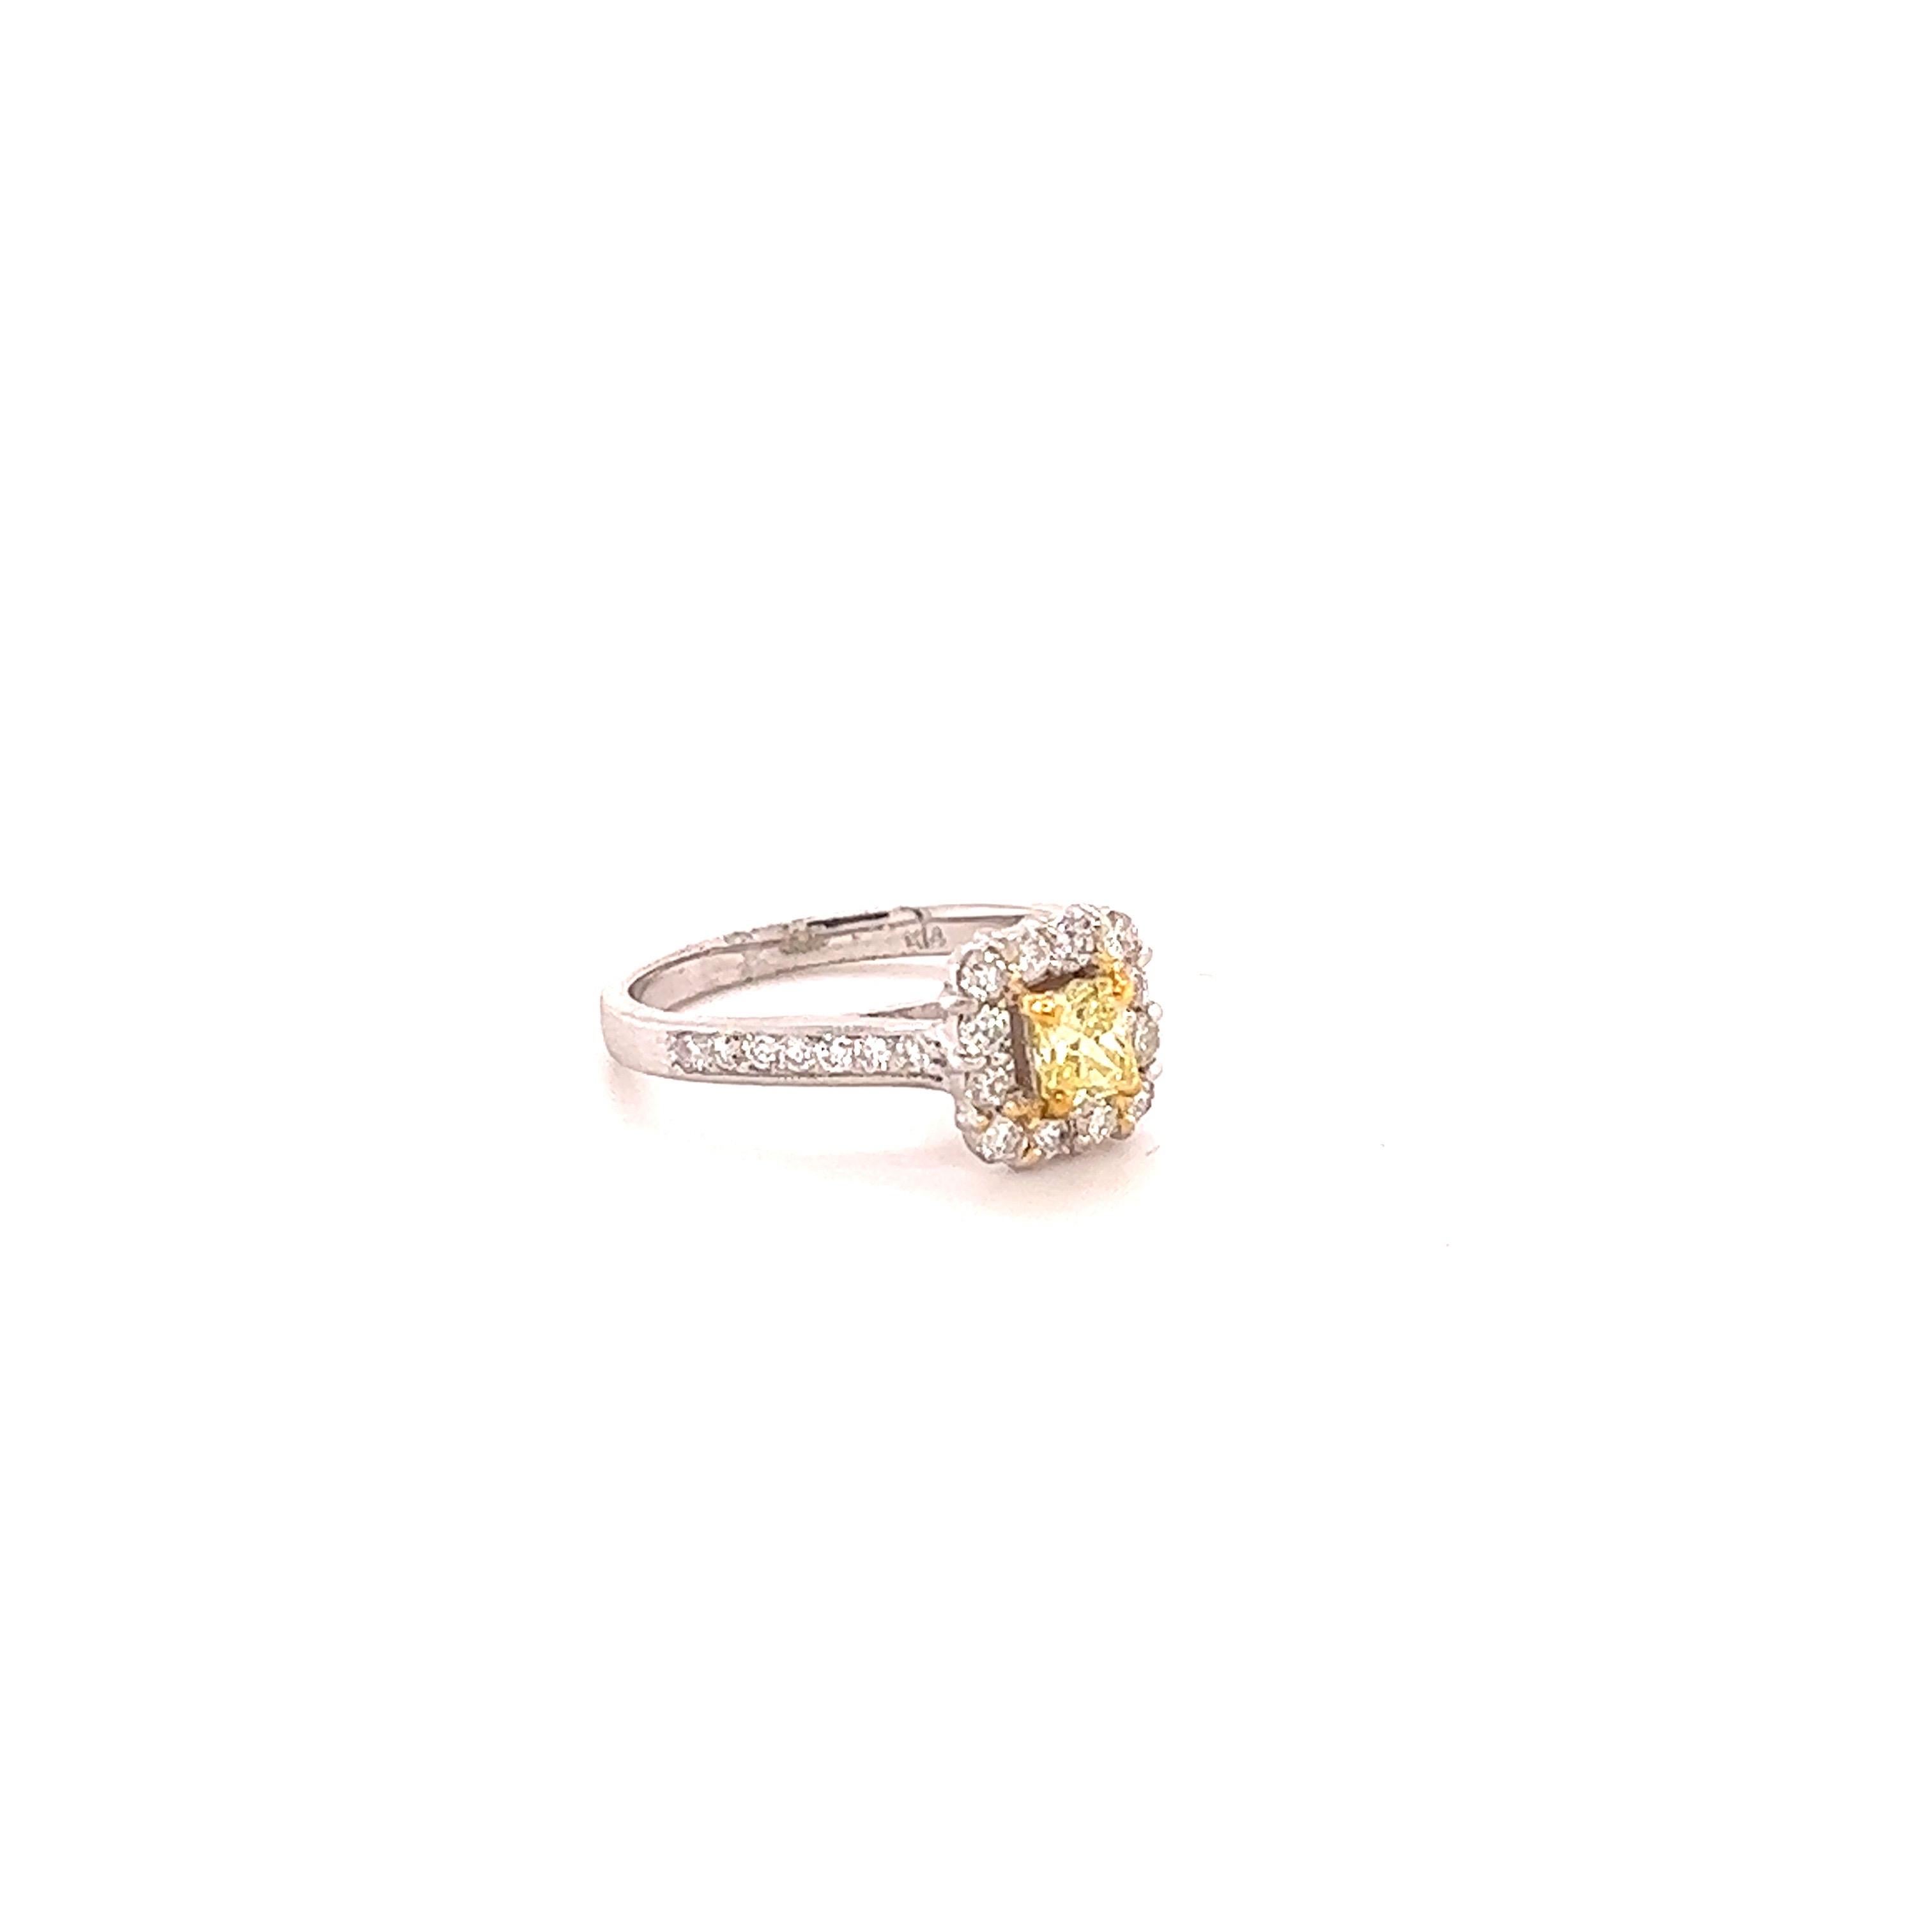 Cette magnifique bague de fiançailles est ornée d'un diamant jaune de taille carrée et coussin pesant 0,39 carats, de pureté VS et de couleur jaune fantaisie. Les dimensions du diamant jaune sont d'environ 4 mm x 4 mm. Il y a 28 diamants de taille